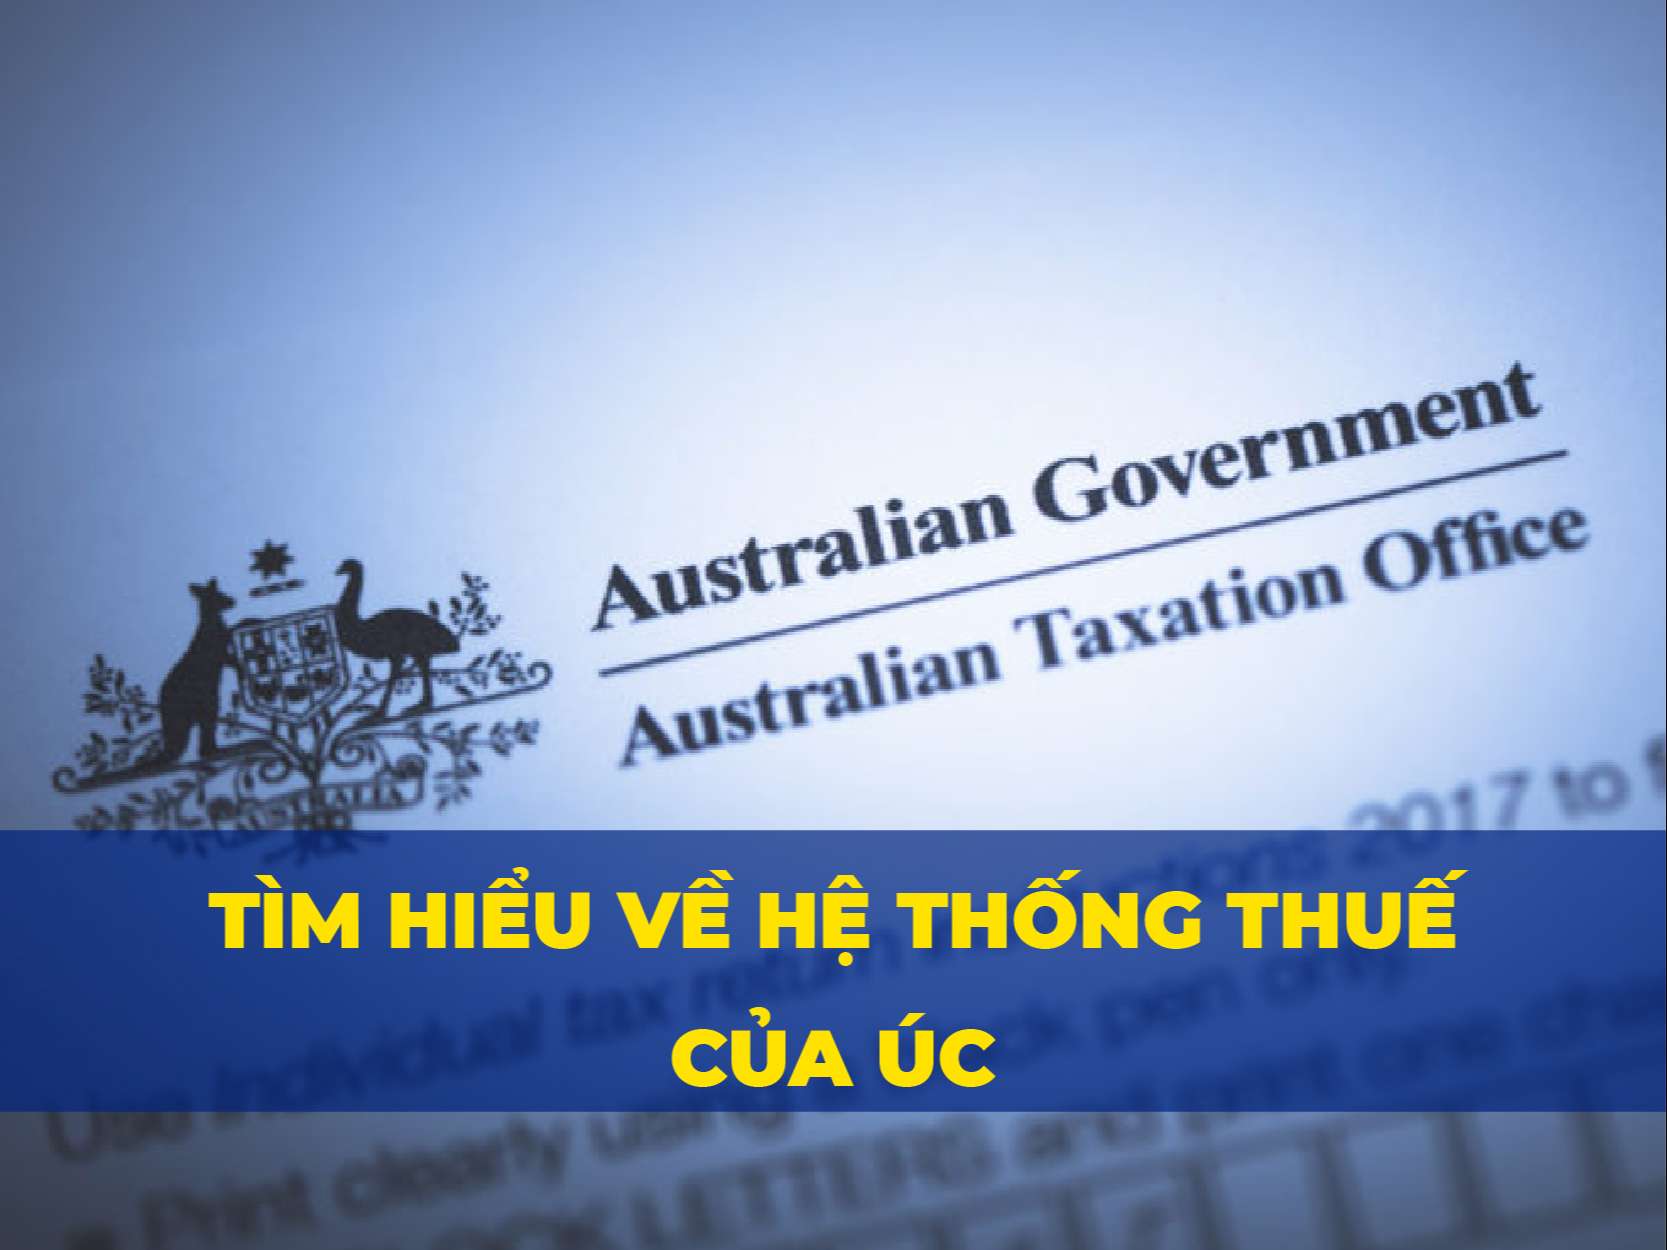 Tìm hiểu về hệ thống Thuế của Úc